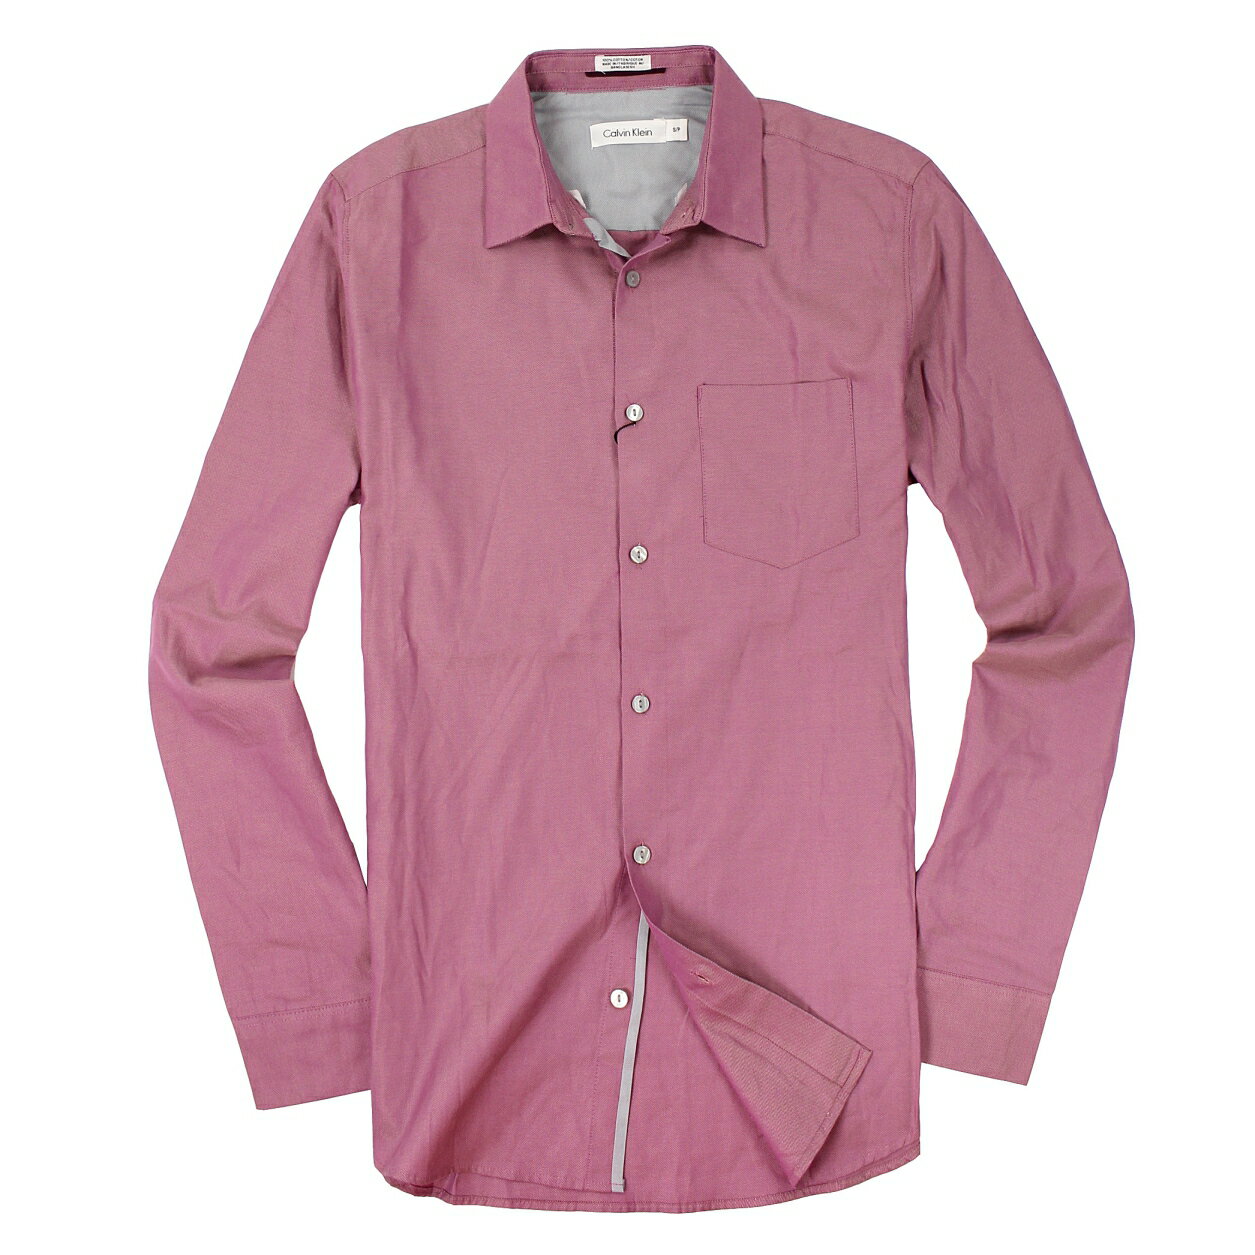 美國百分百【全新真品】Calvin Klein 襯衫 CK 長袖 上衣 紫紅 純棉 素面 薄 口袋 男 S M號 A885